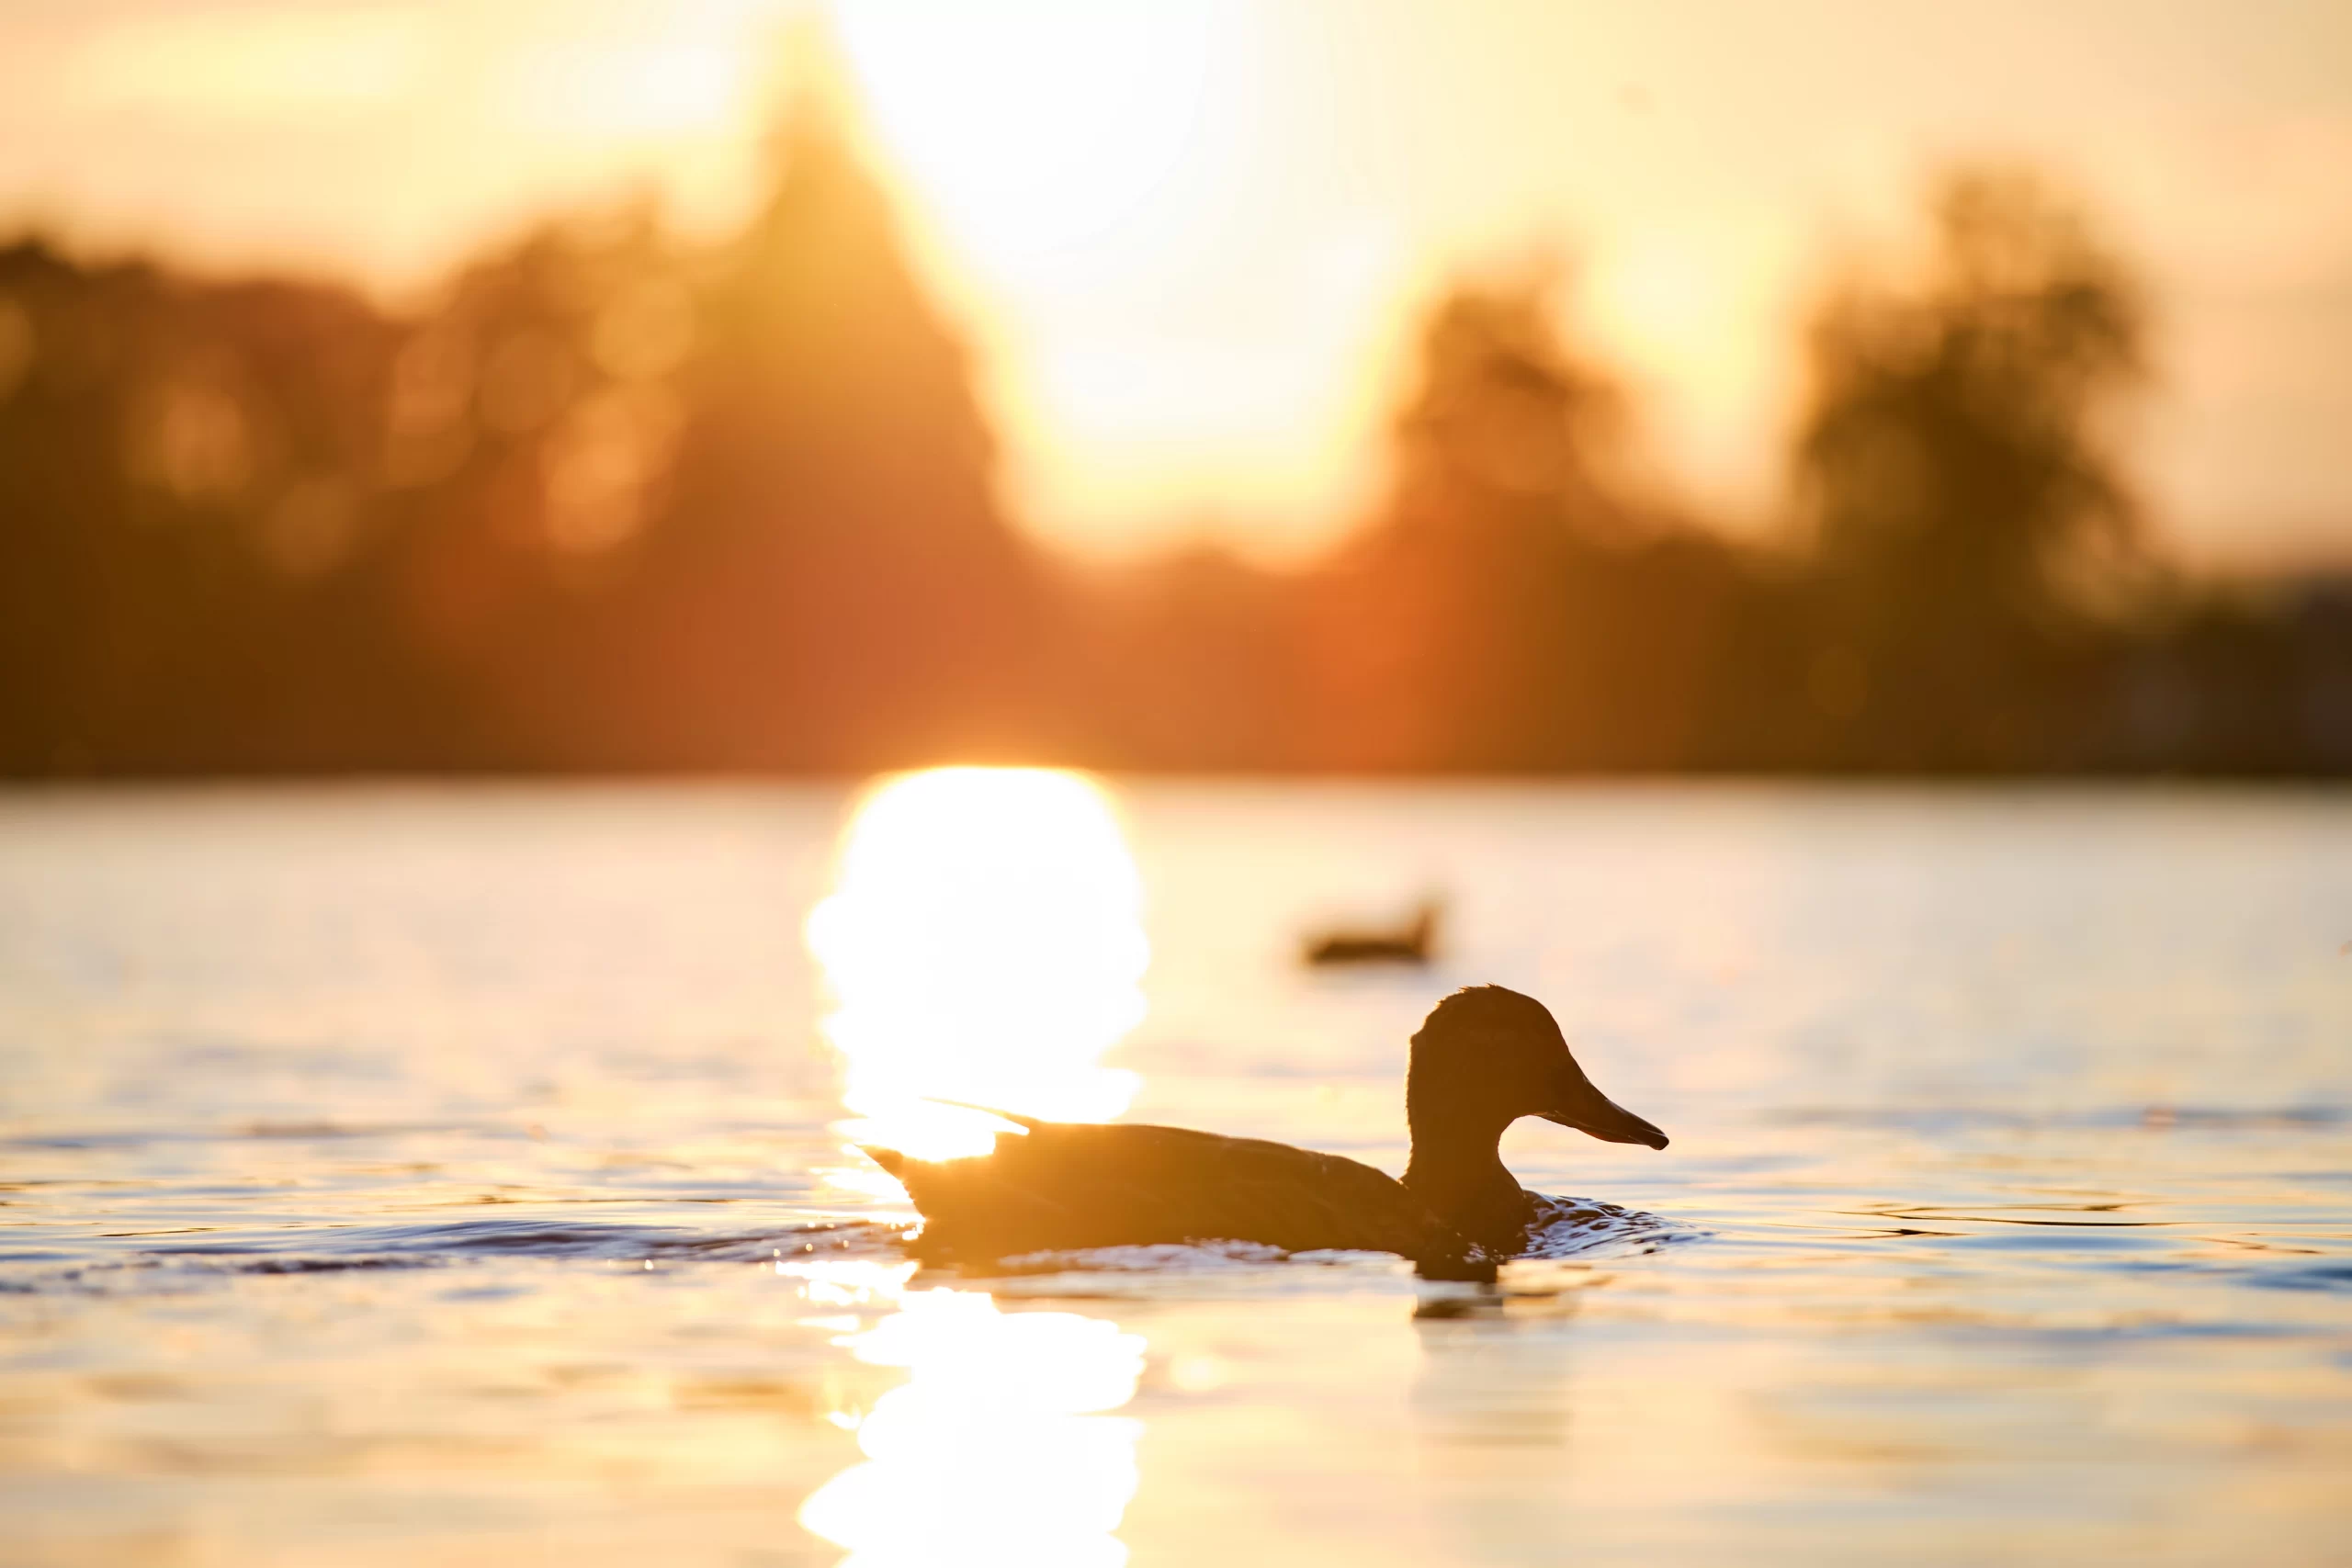 wild-ducks-swimming-on-lake-water-at-bright-sunset-2022-02-18-04-42-12-utc